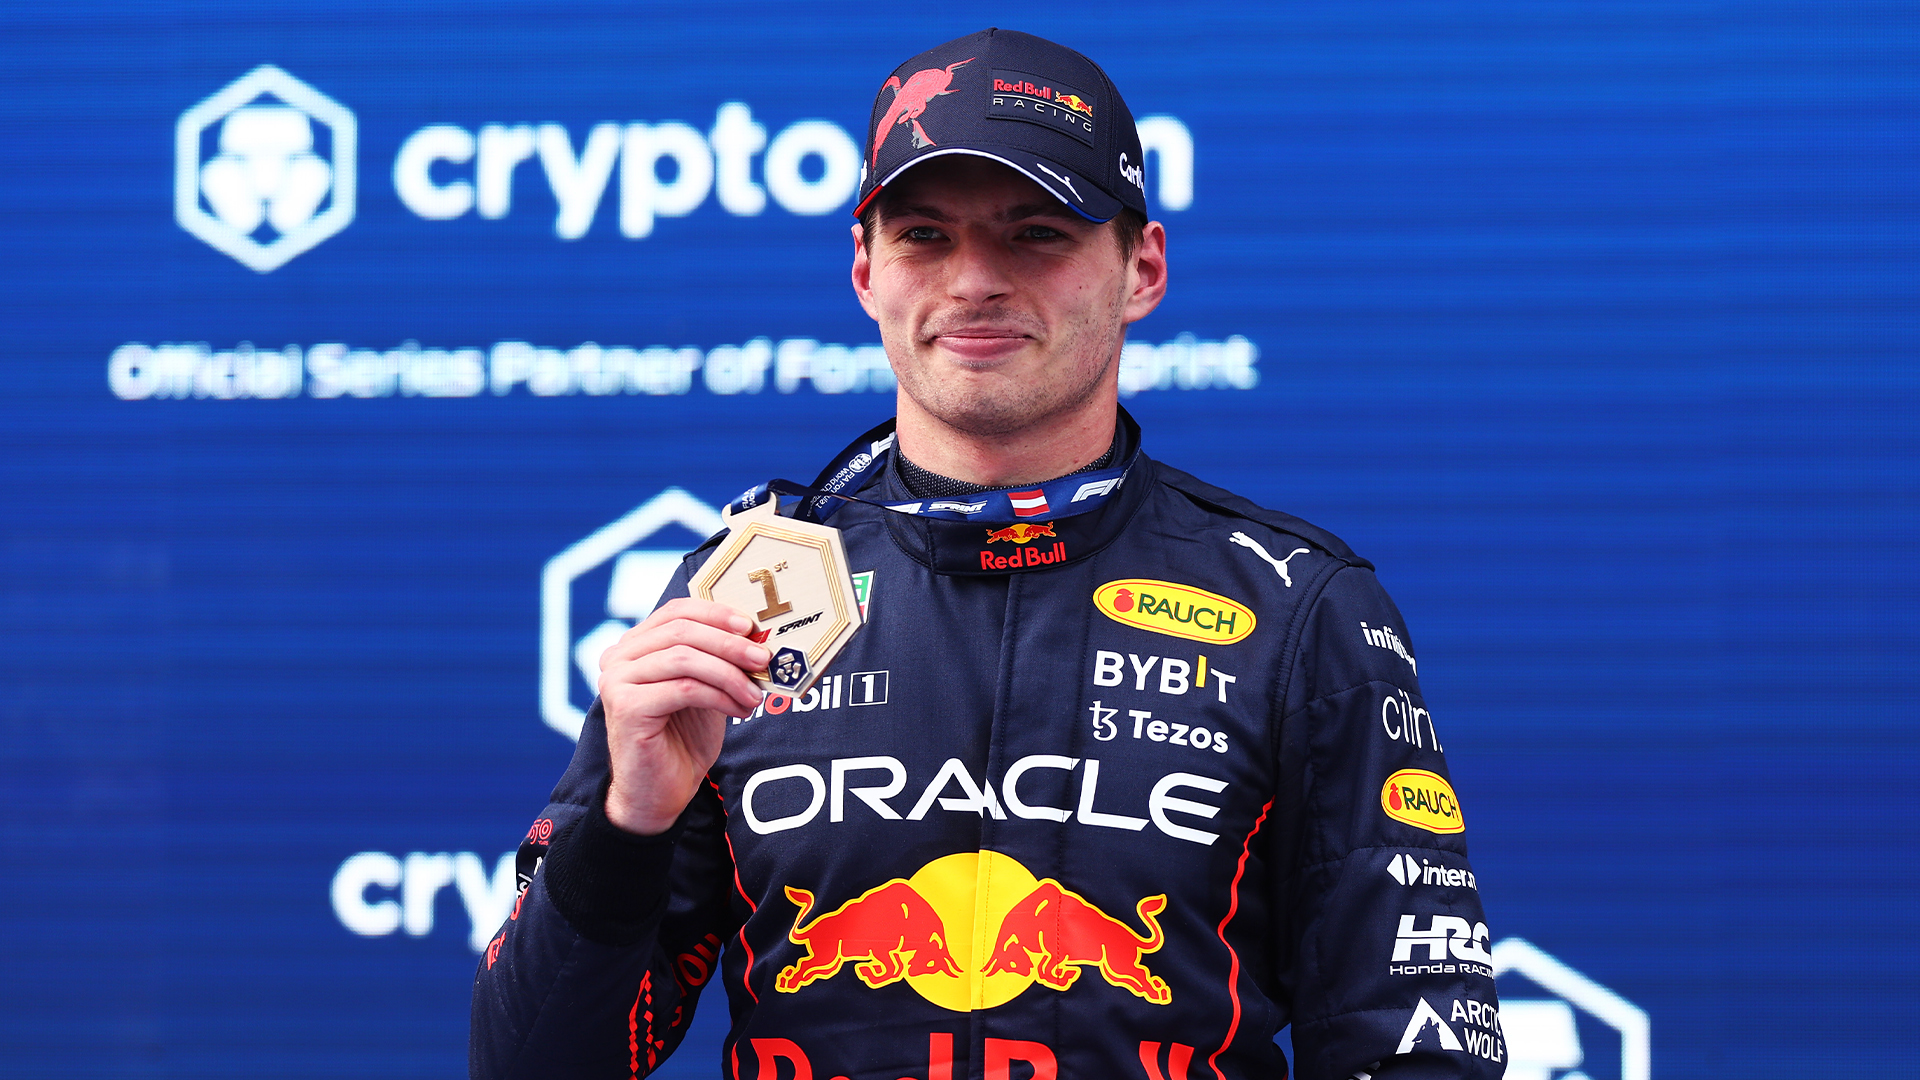 Max Verstappen amplió su liderazgo al ganar el Sprint en Austria